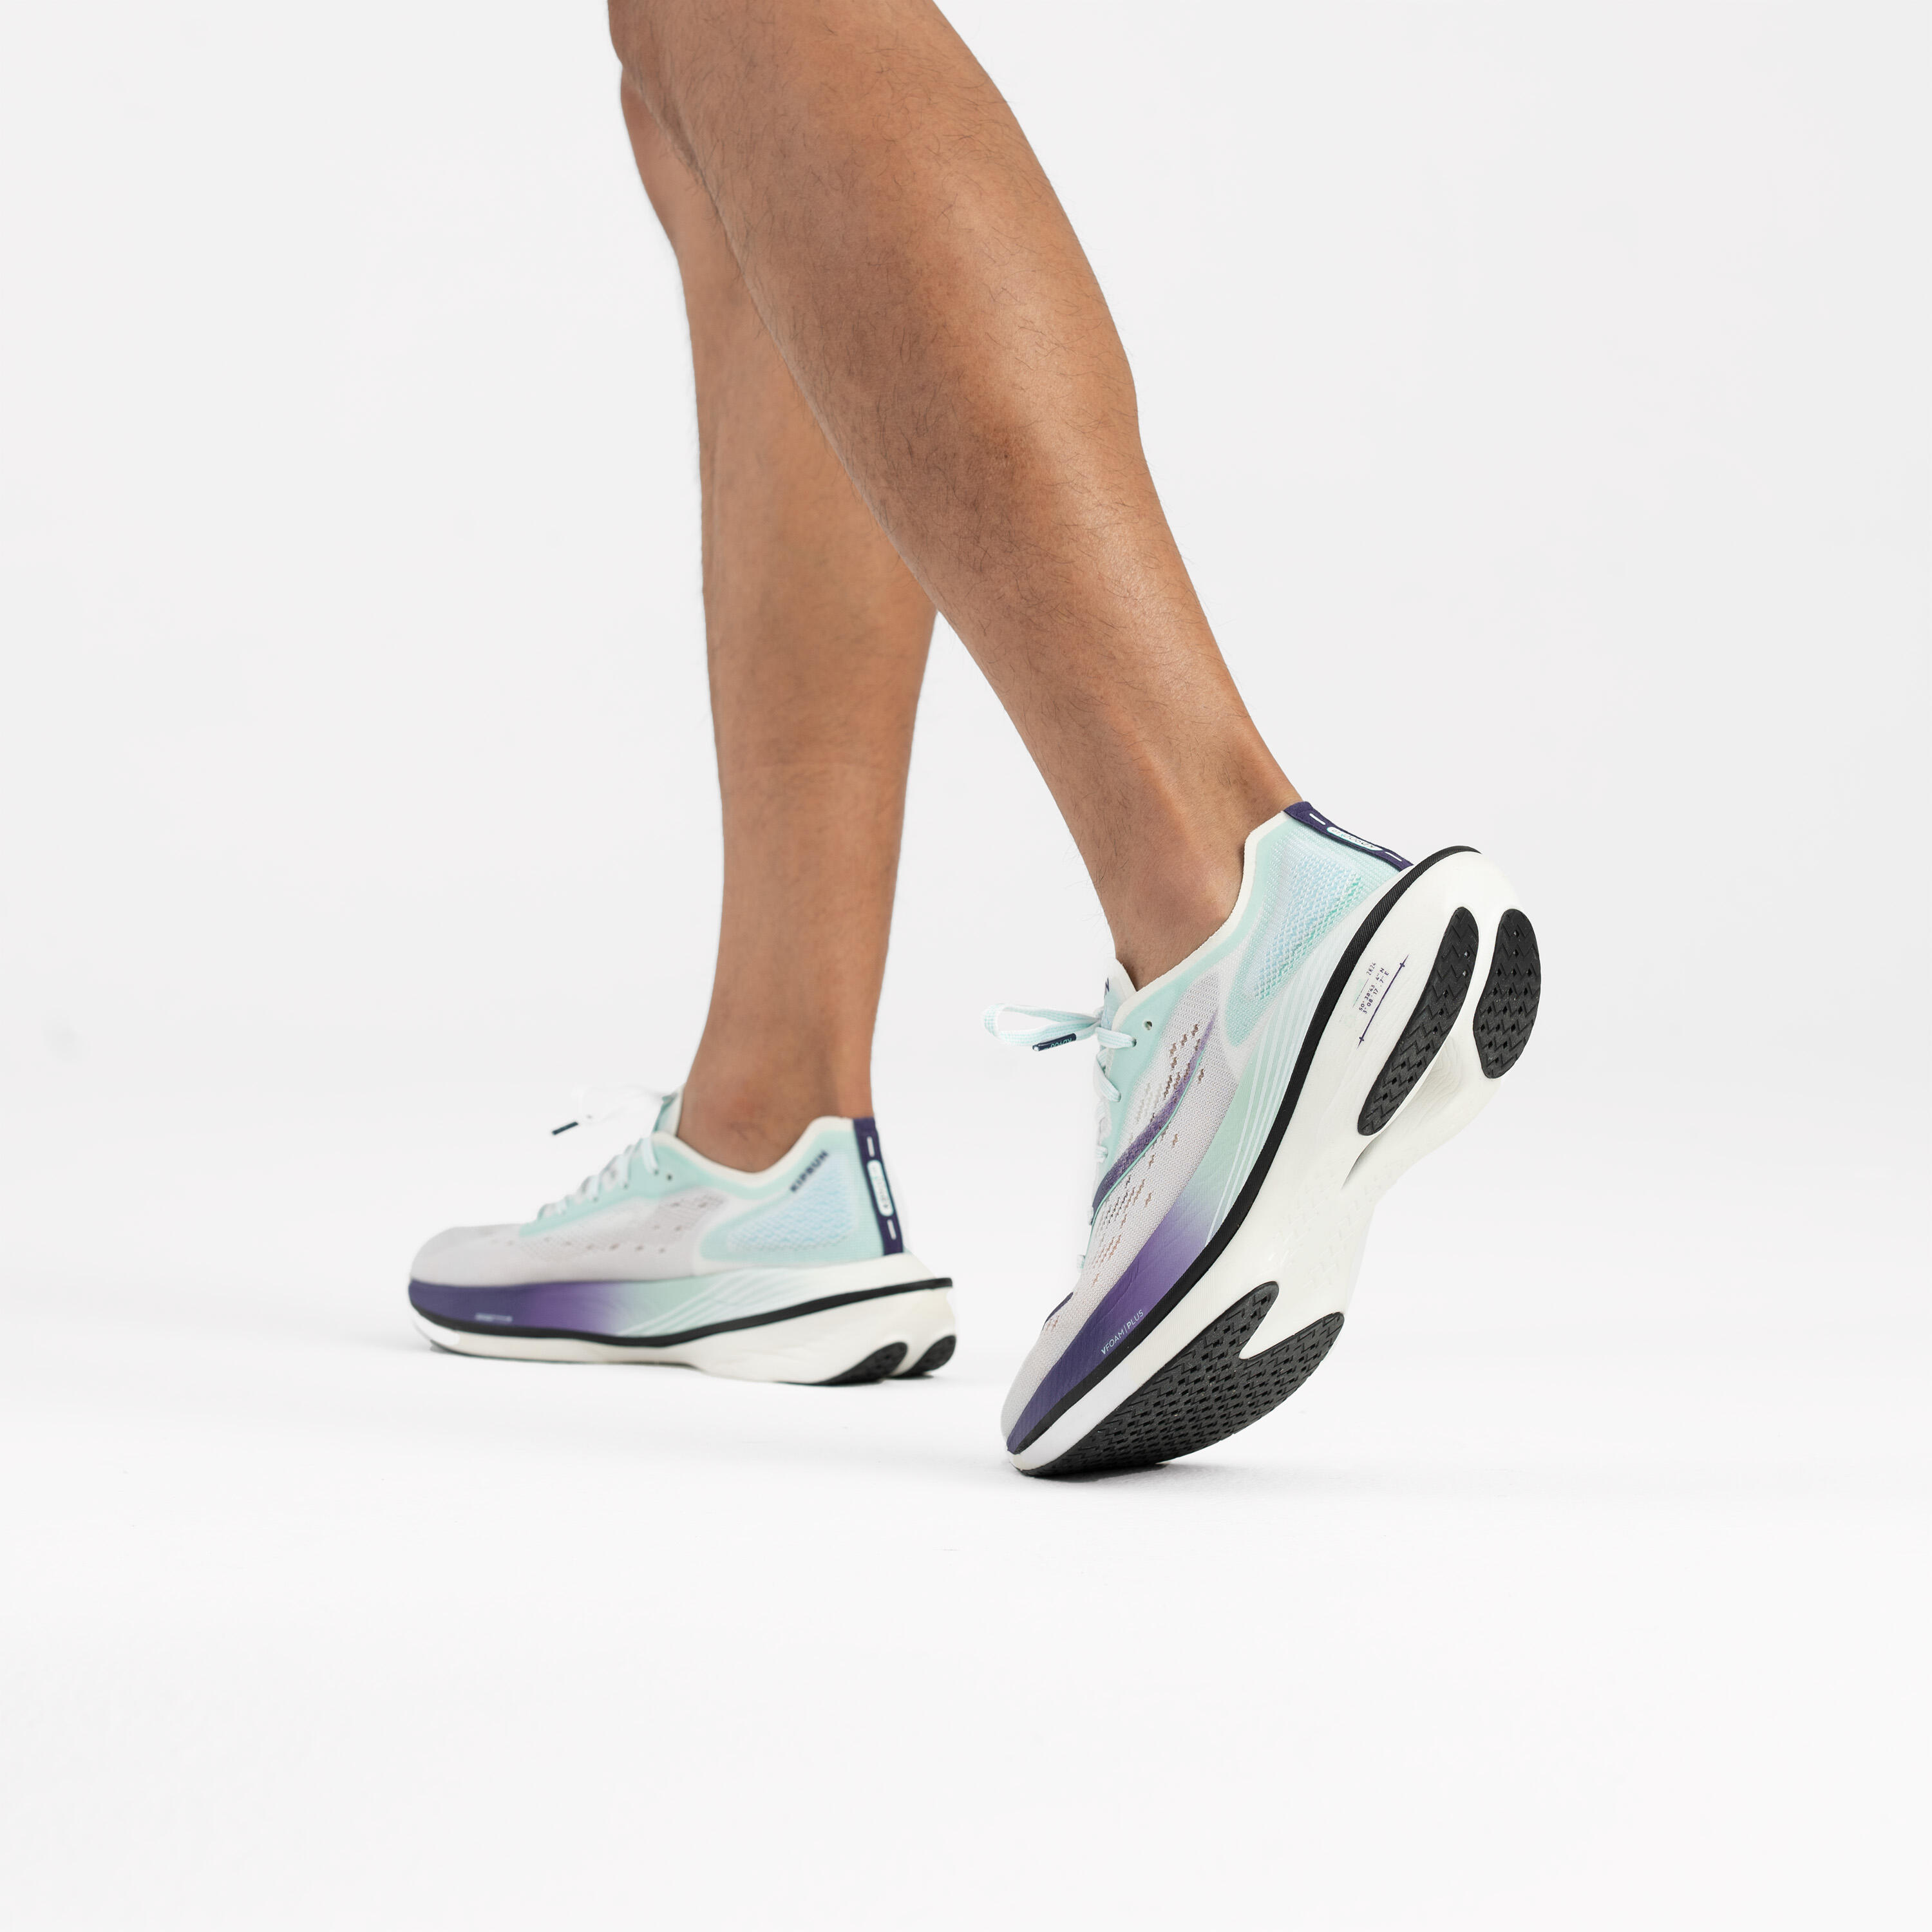 Men's Carbon Plate Running Shoes - KD 900X LD - KIPRUN